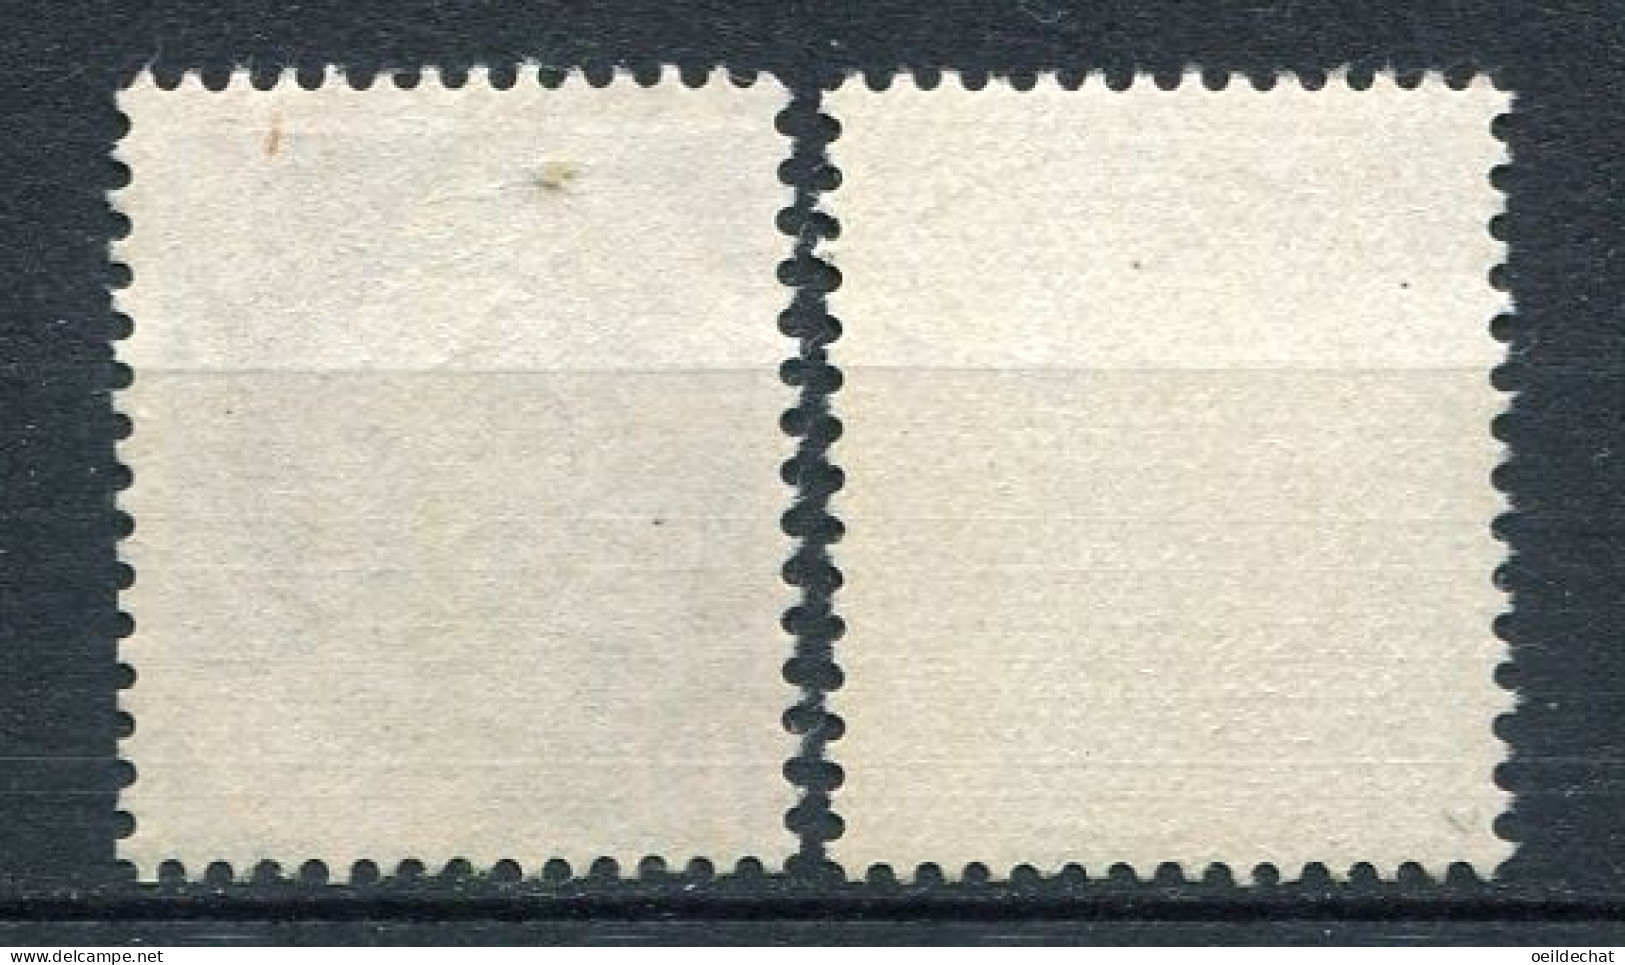 26039 FRANCE  Préo.101° 8F Marianne De Gandon : "T" Tronçoné + Normal   1949  TB - Used Stamps